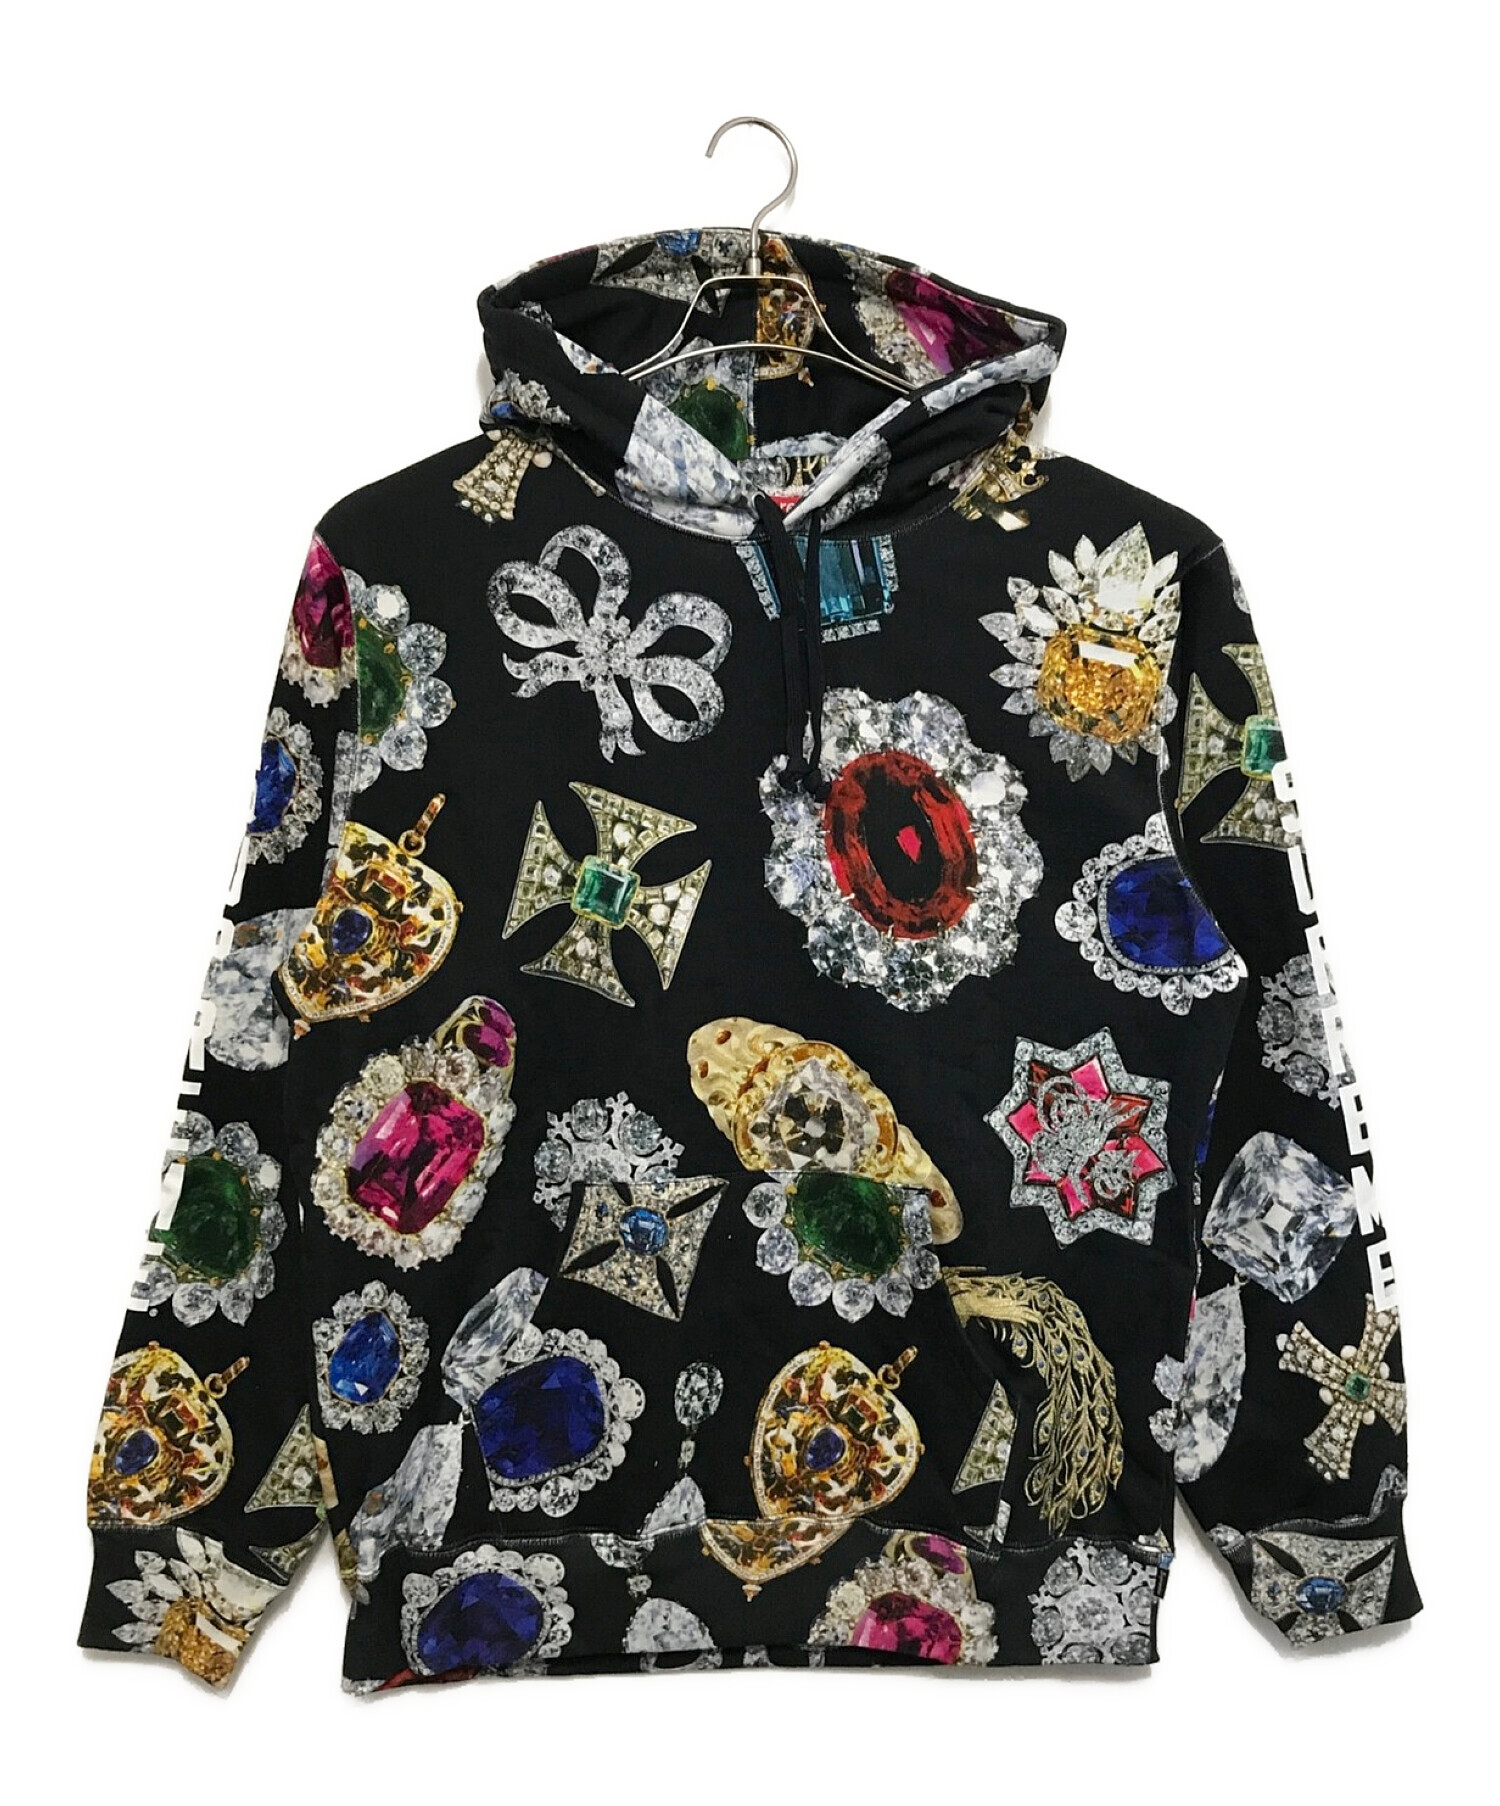 SUPREME (シュプリーム) Jewels Hooded Sweatshirt / ジュエルズ フーデッド スウェットシャツ ブラック  サイズ:XLarge